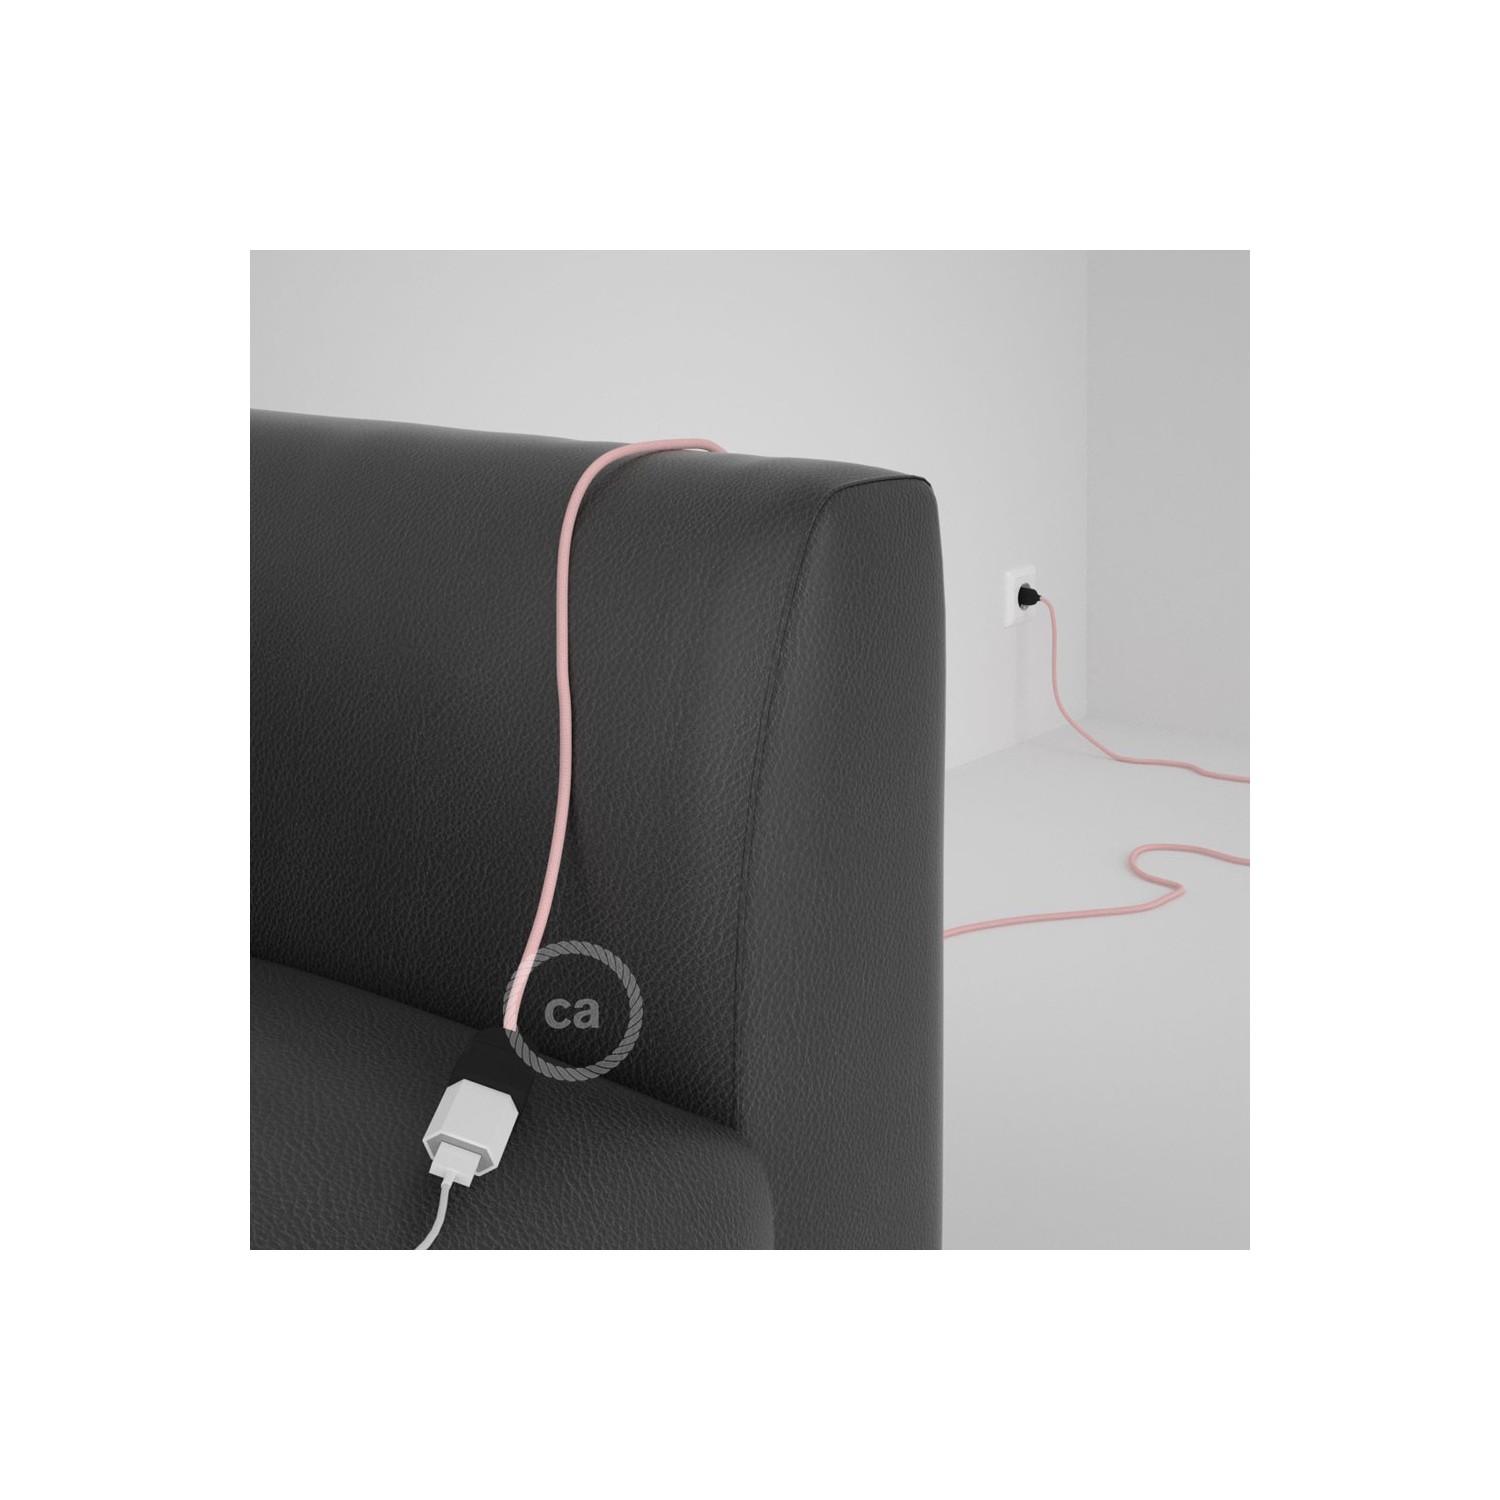 Rallonge électrique avec câble textile RM16 Effet Soie Rose Baby 2P 10A Made in Italy.